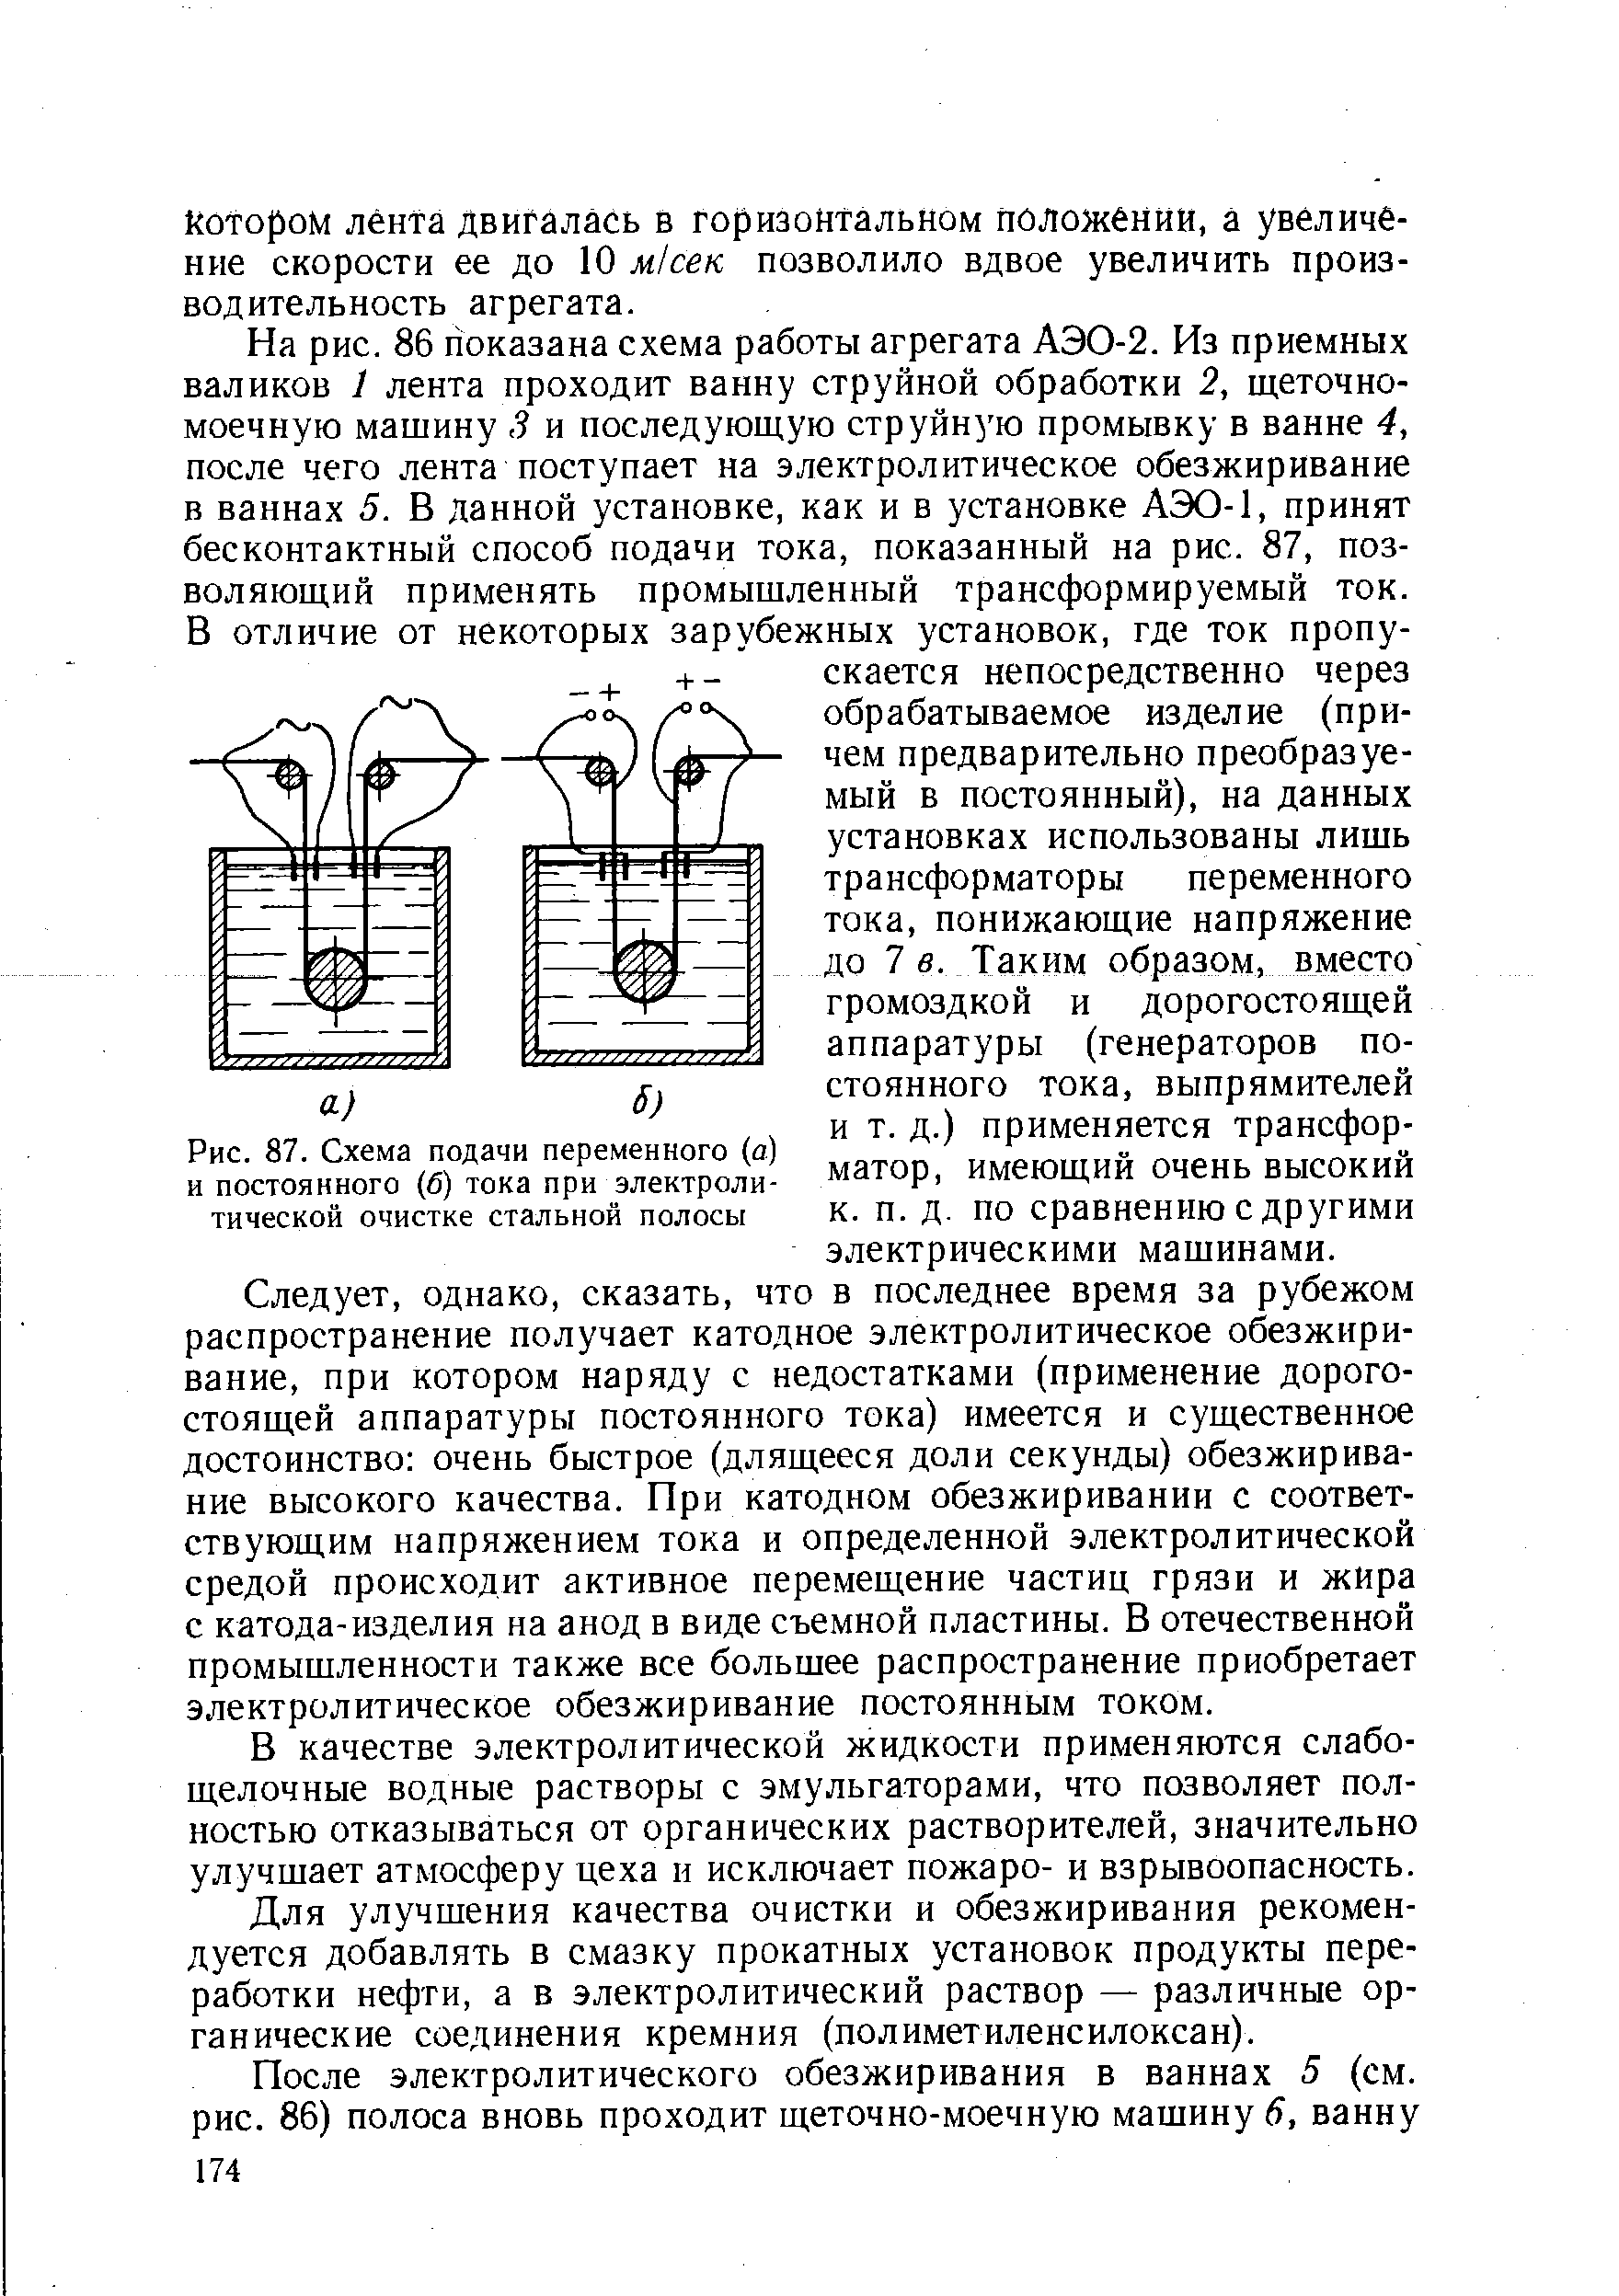 Рис. 87. Схема подачи переменного (а) и постоянного (б) тока при электролитической очистке стальной полосы